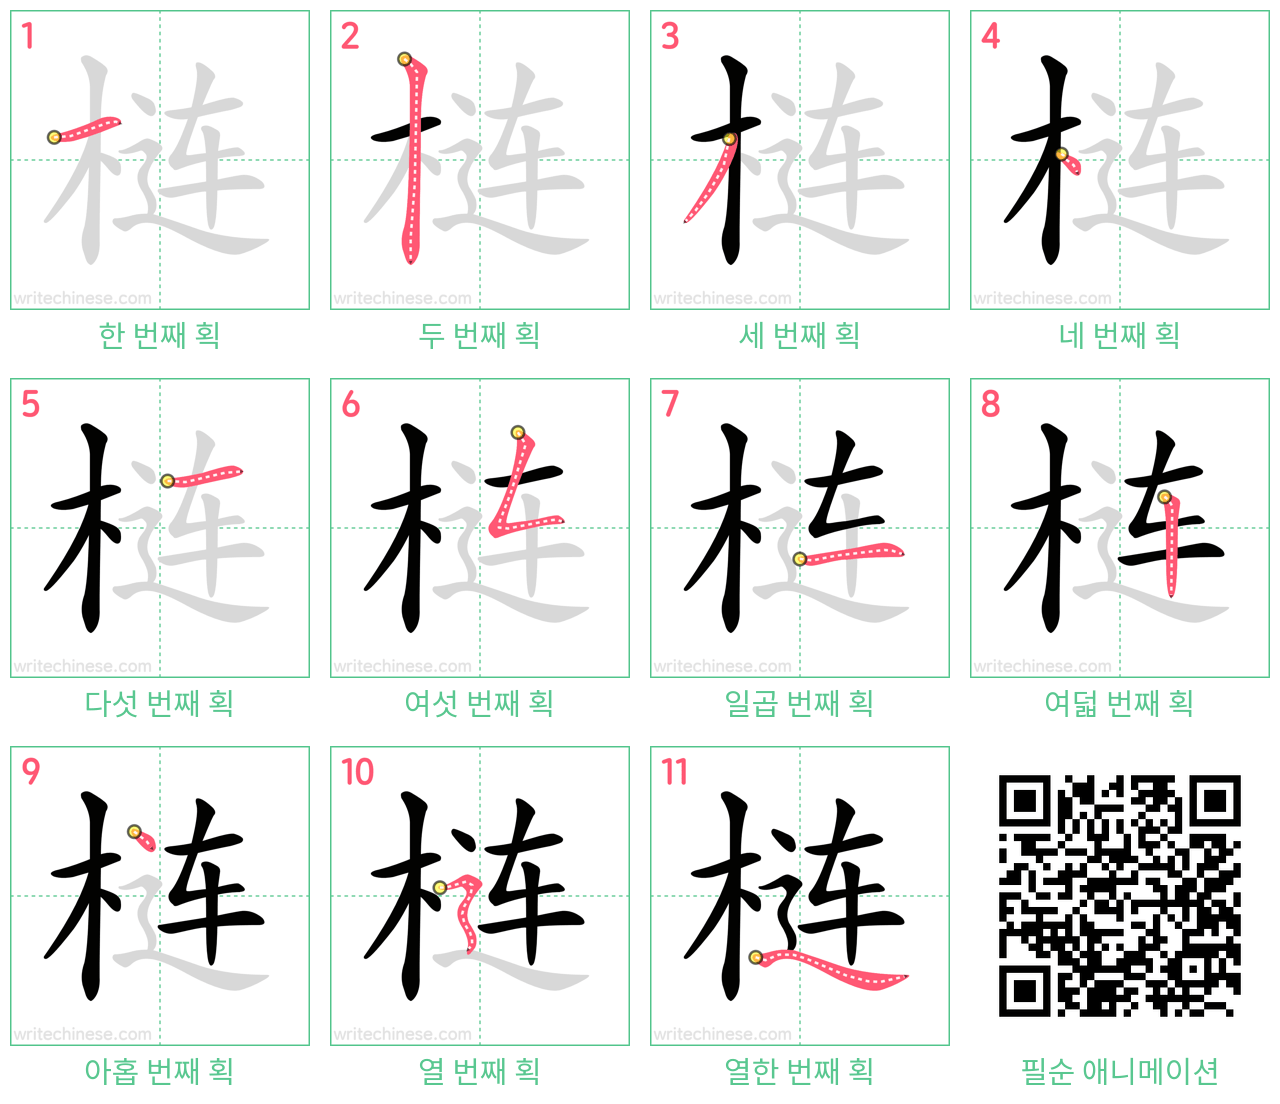 梿 step-by-step stroke order diagrams